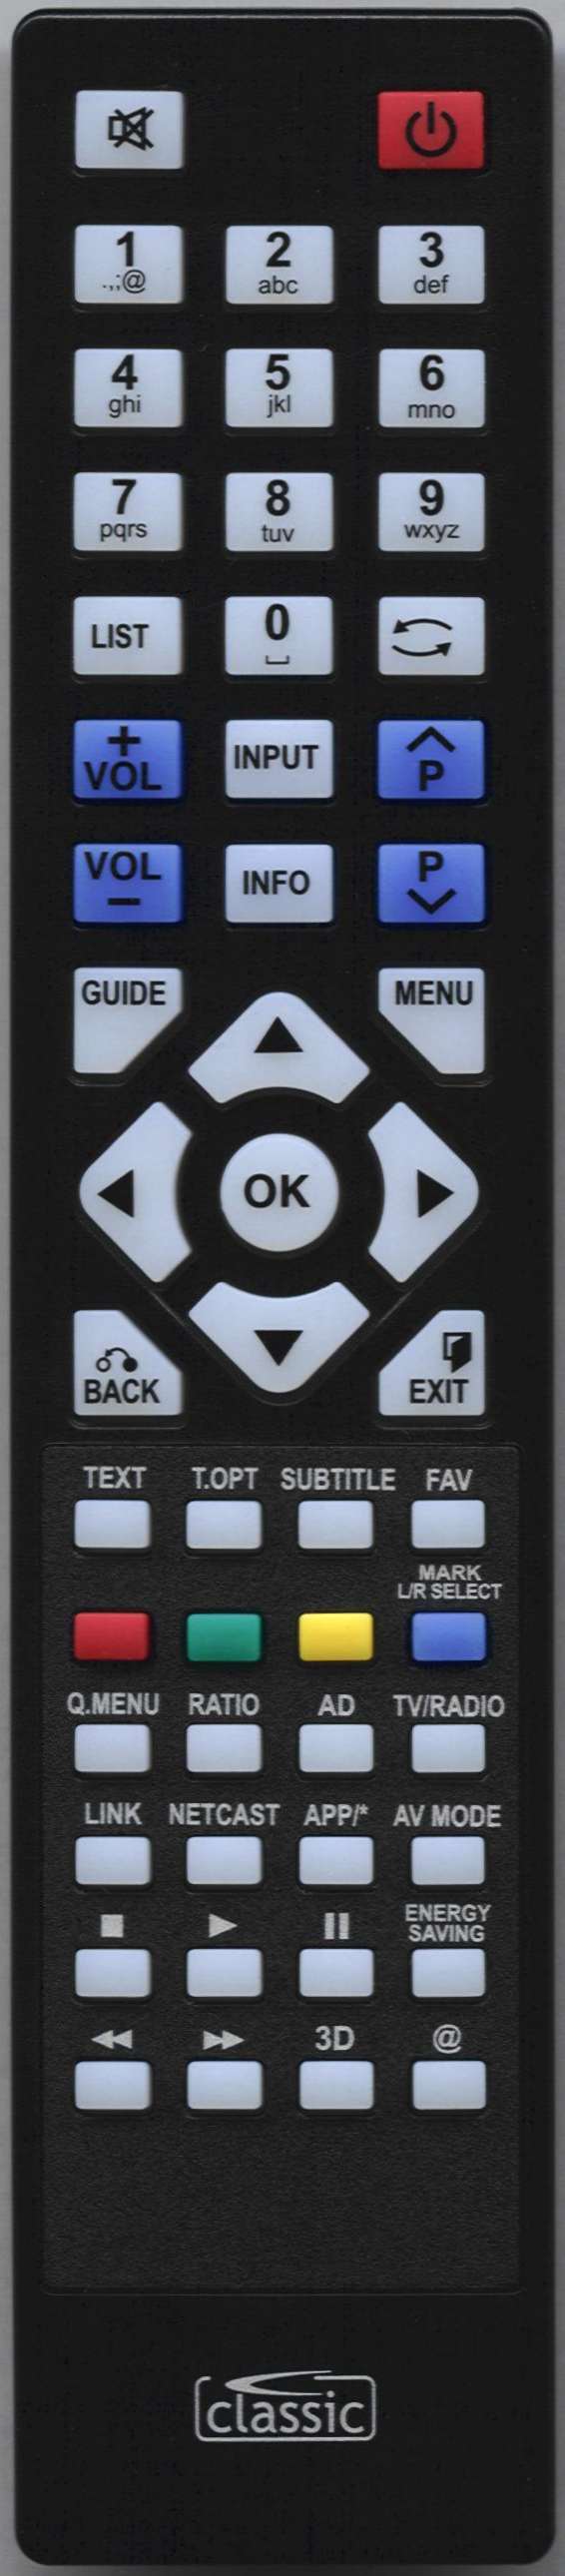 LG 19LD350-ZA Remote Control Alternative